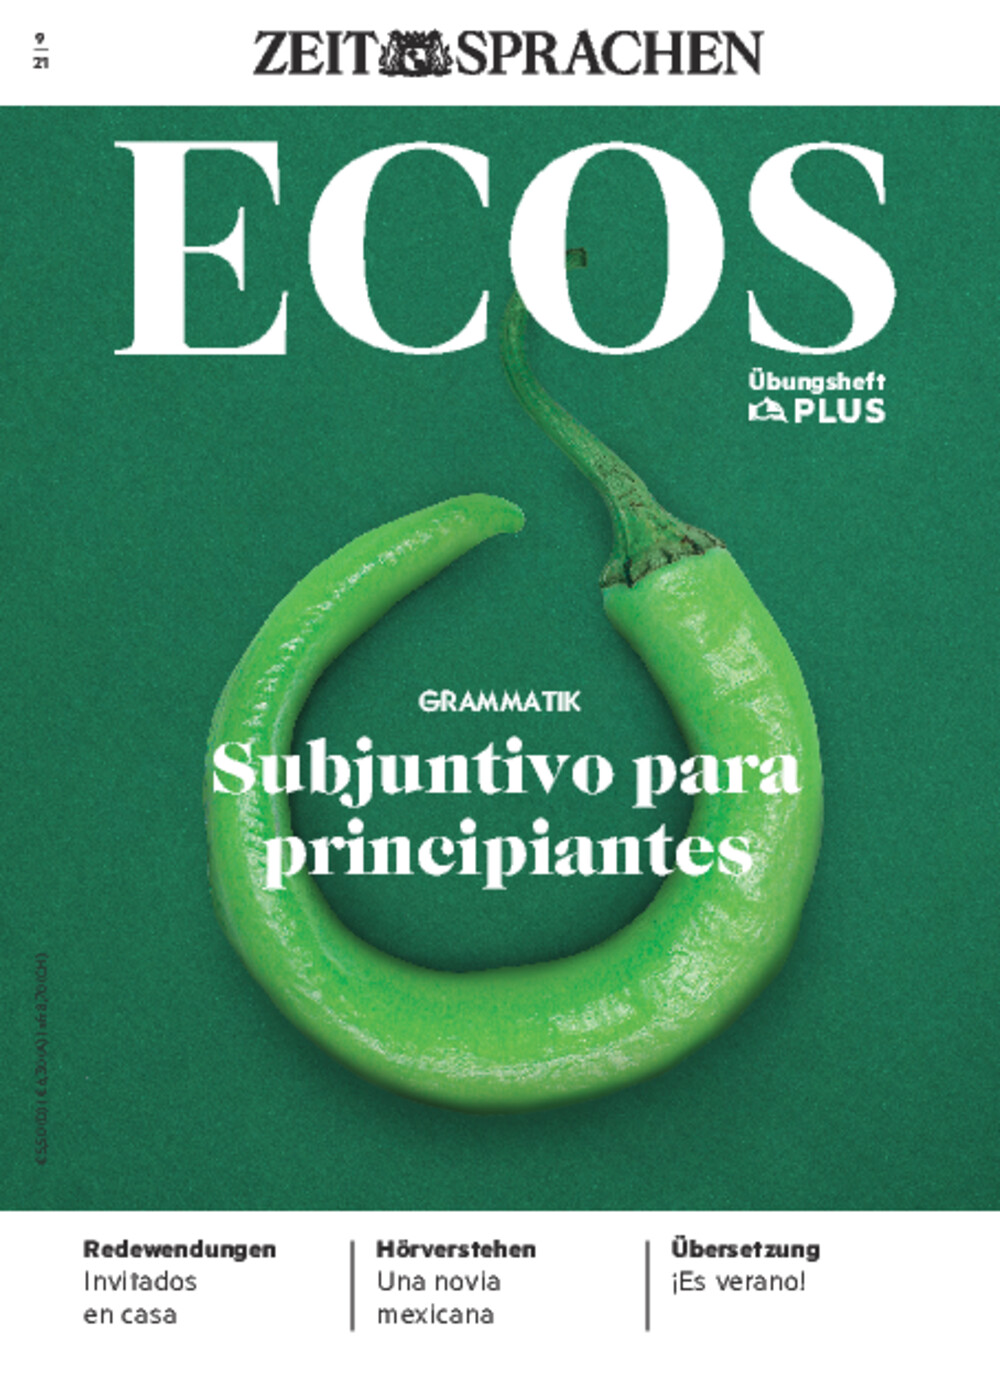 Ecos PLUS ePaper 09/2021